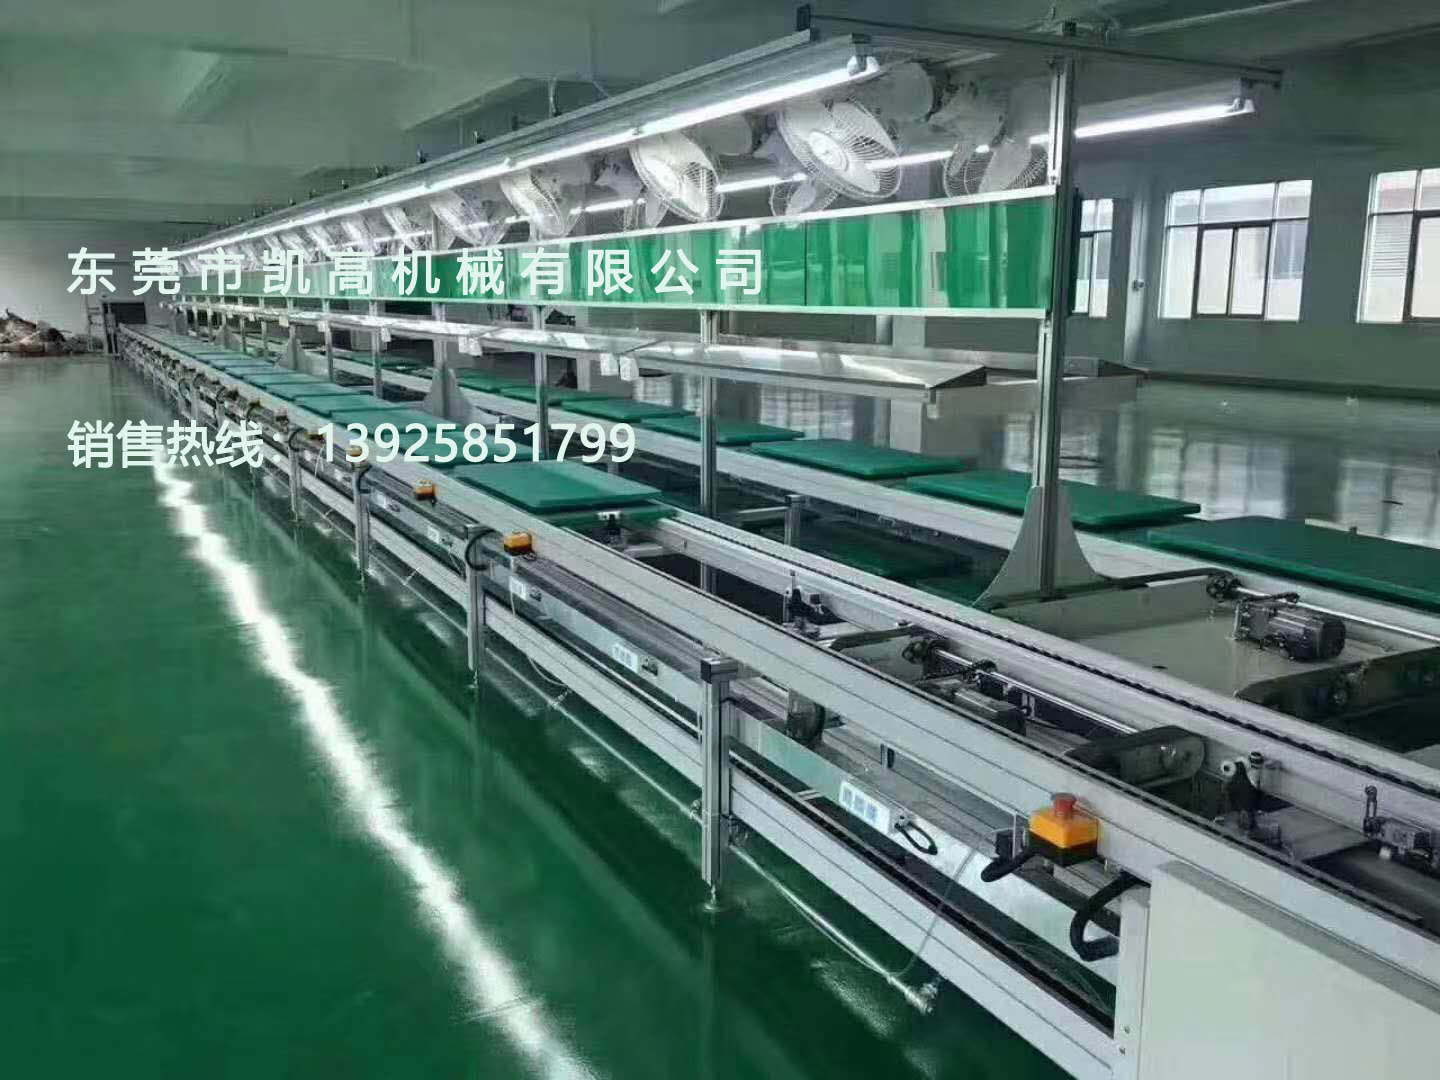 东莞供应电子电器组装生产线  电子组装线